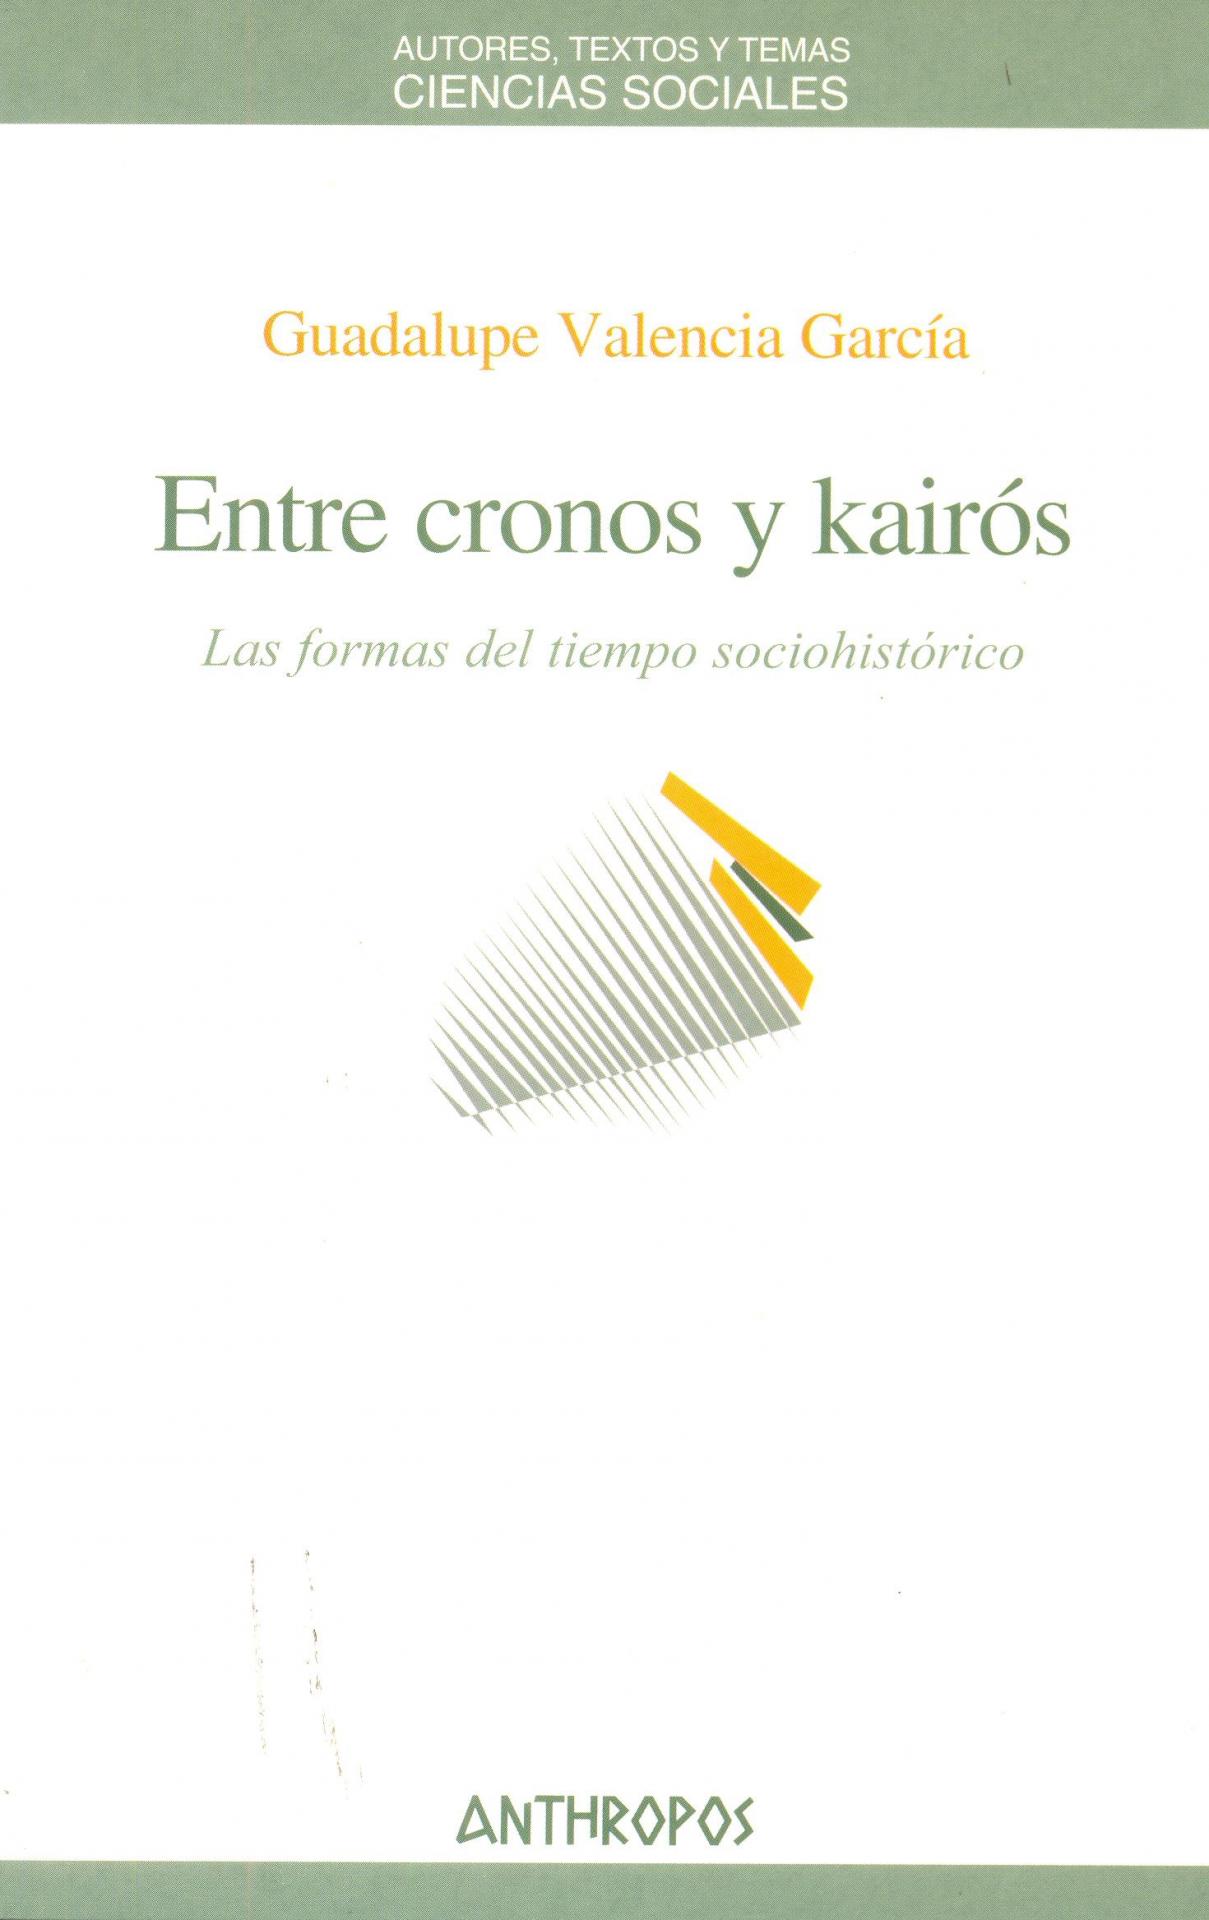 ENTRE CRONOS Y KAIRÓS. Las formas del tiempo sociohistórico. Valencia, G.